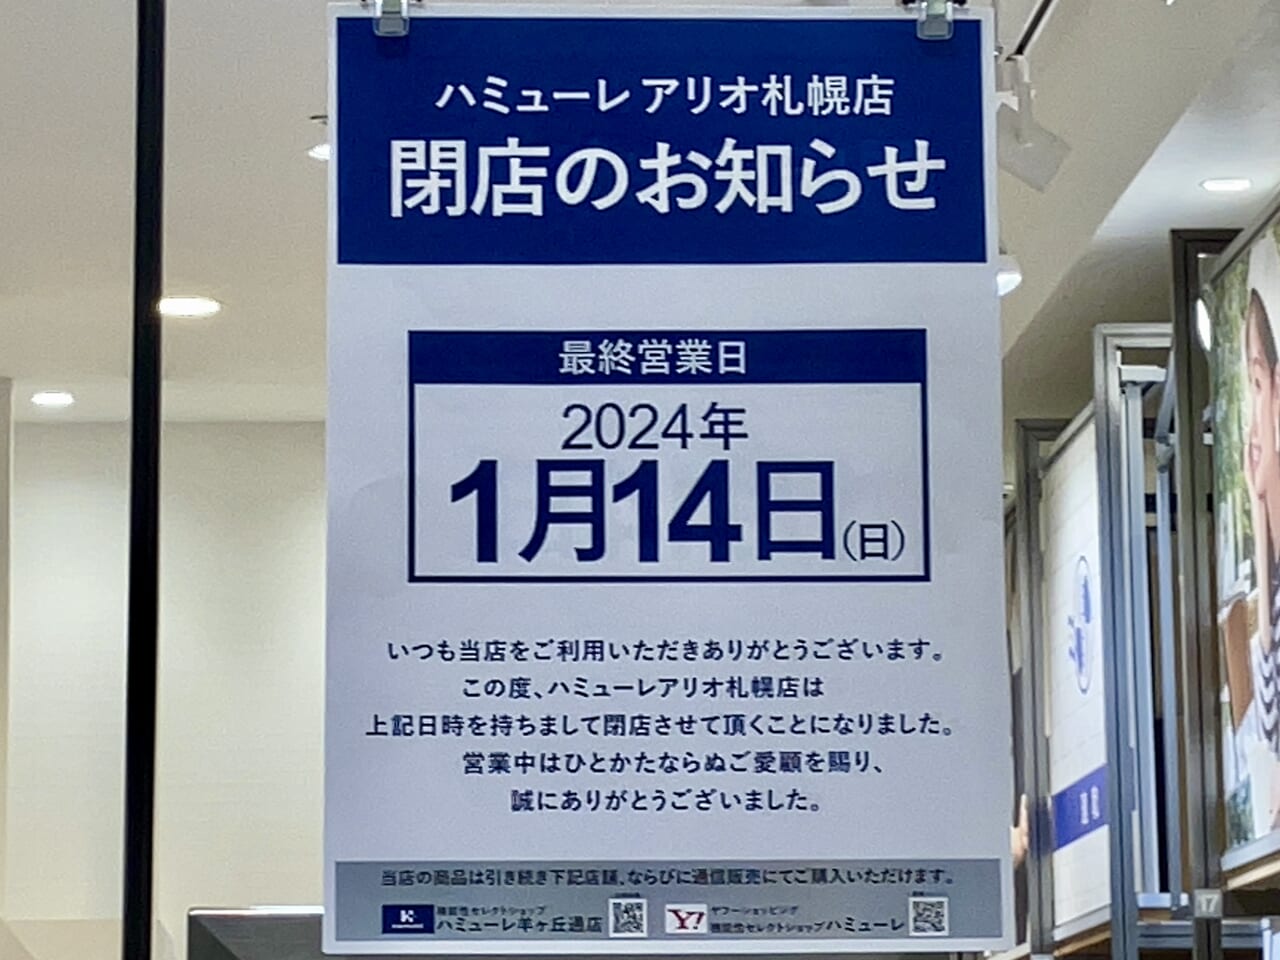 閉店セール開催中。アリオ札幌の「ハミューレ」が閉店することがわかりました。